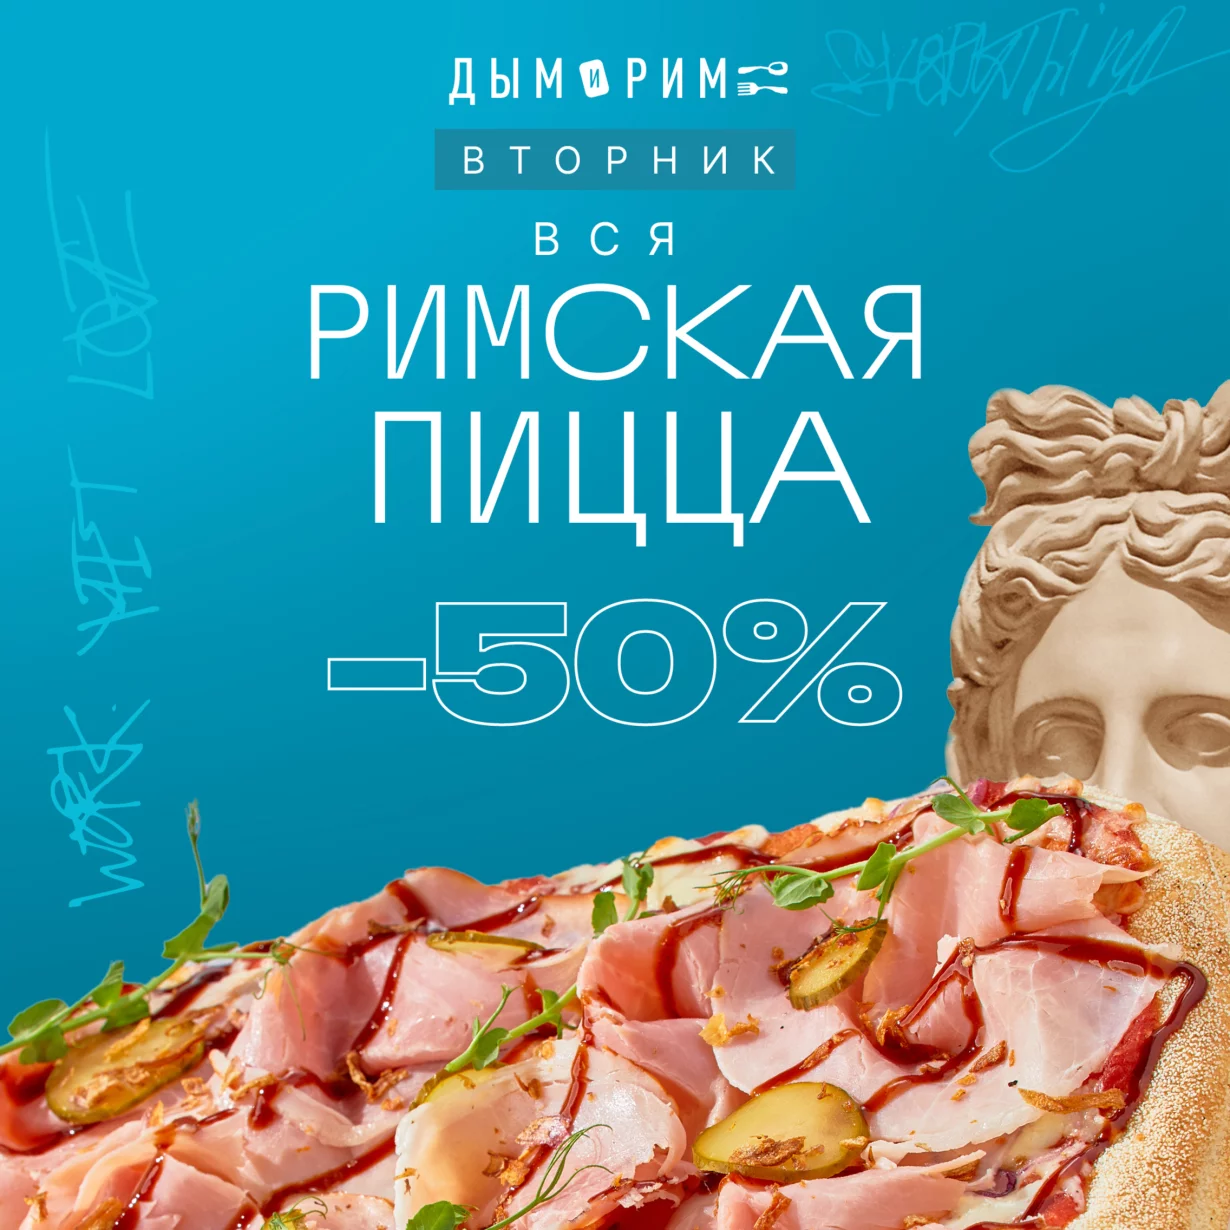 Римская пицца со скидкой 50%